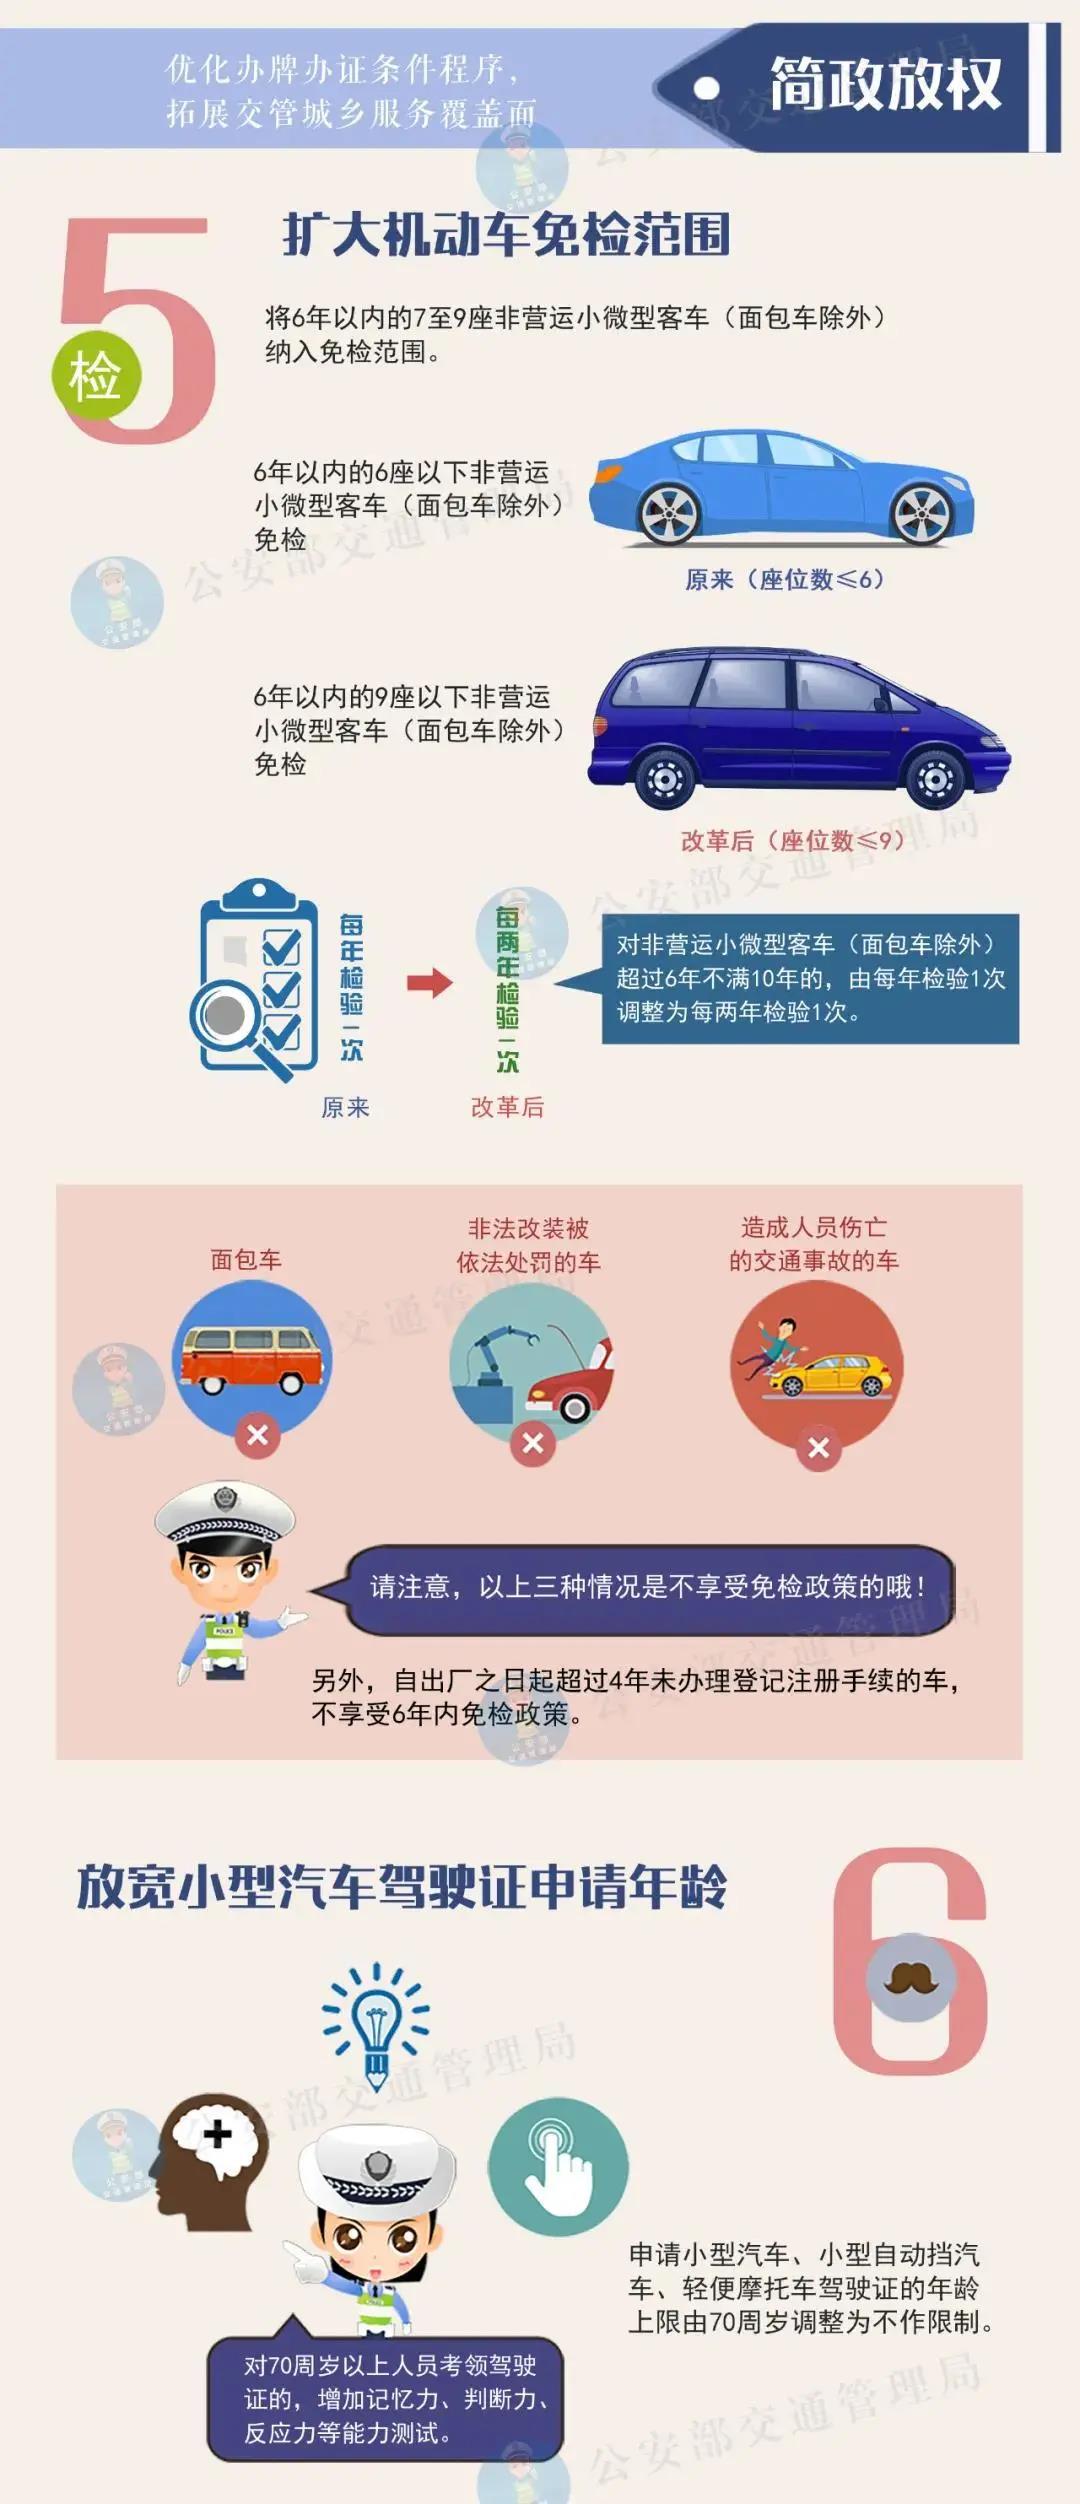 @汕头市民，驾照申请70周岁年龄上限即将取消，还有一大波惠民政策